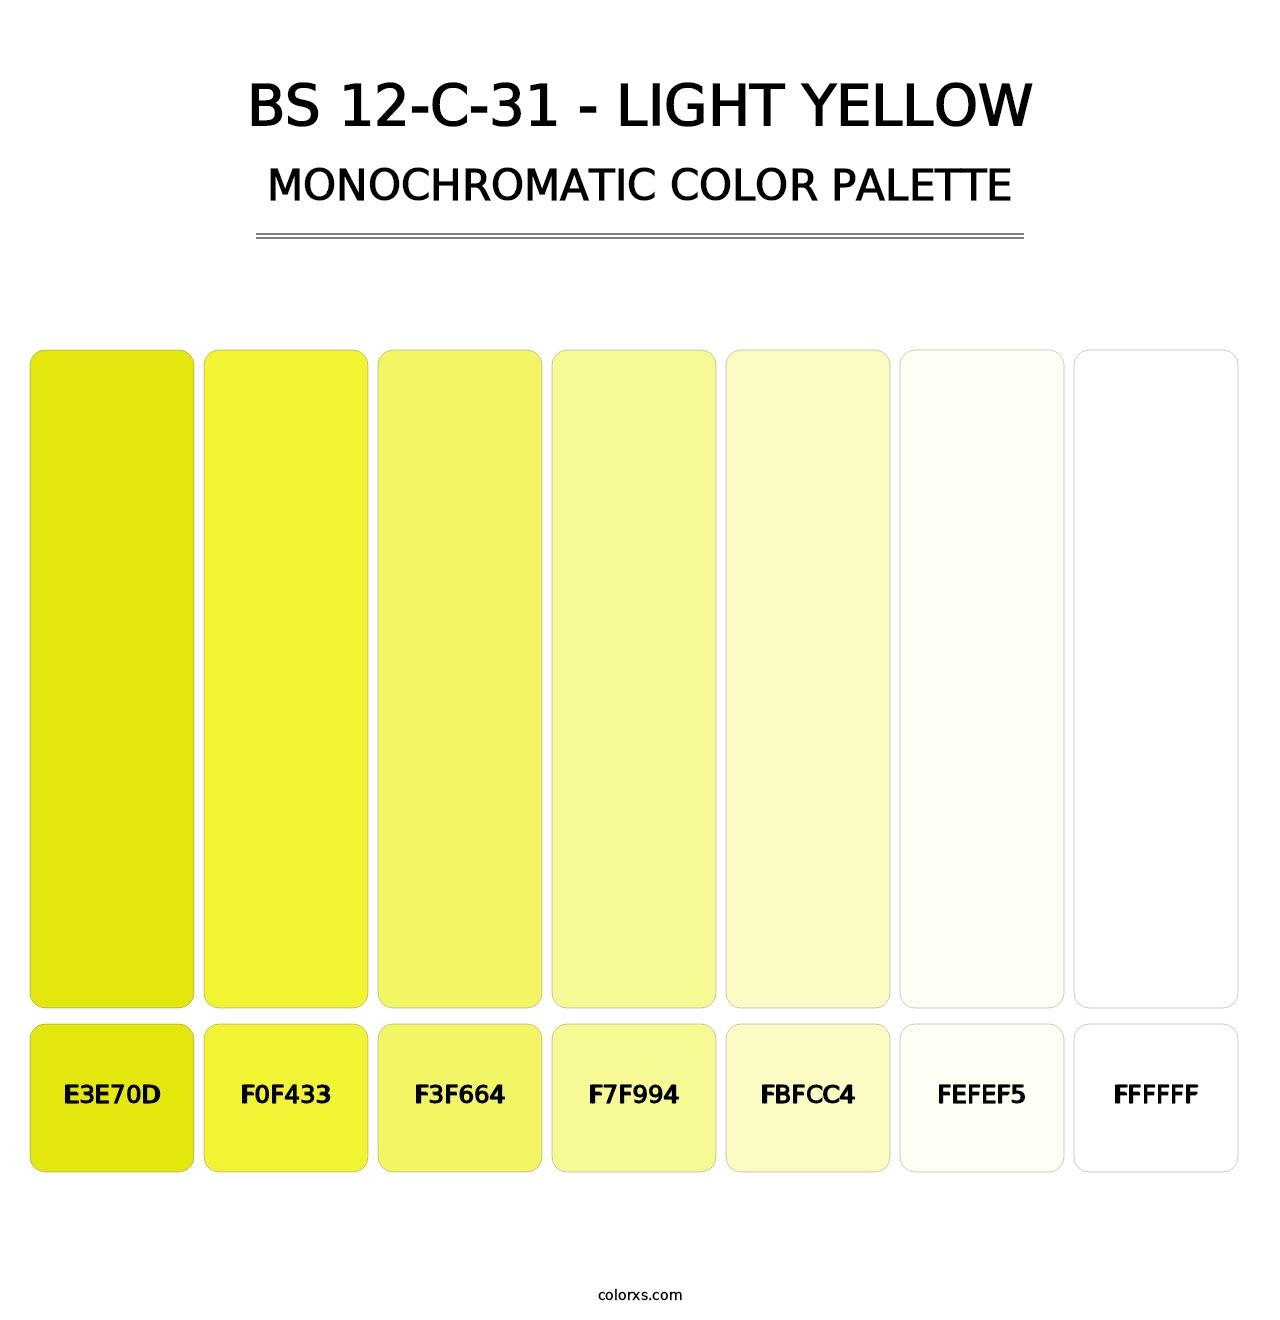 BS 12-C-31 - Light Yellow - Monochromatic Color Palette